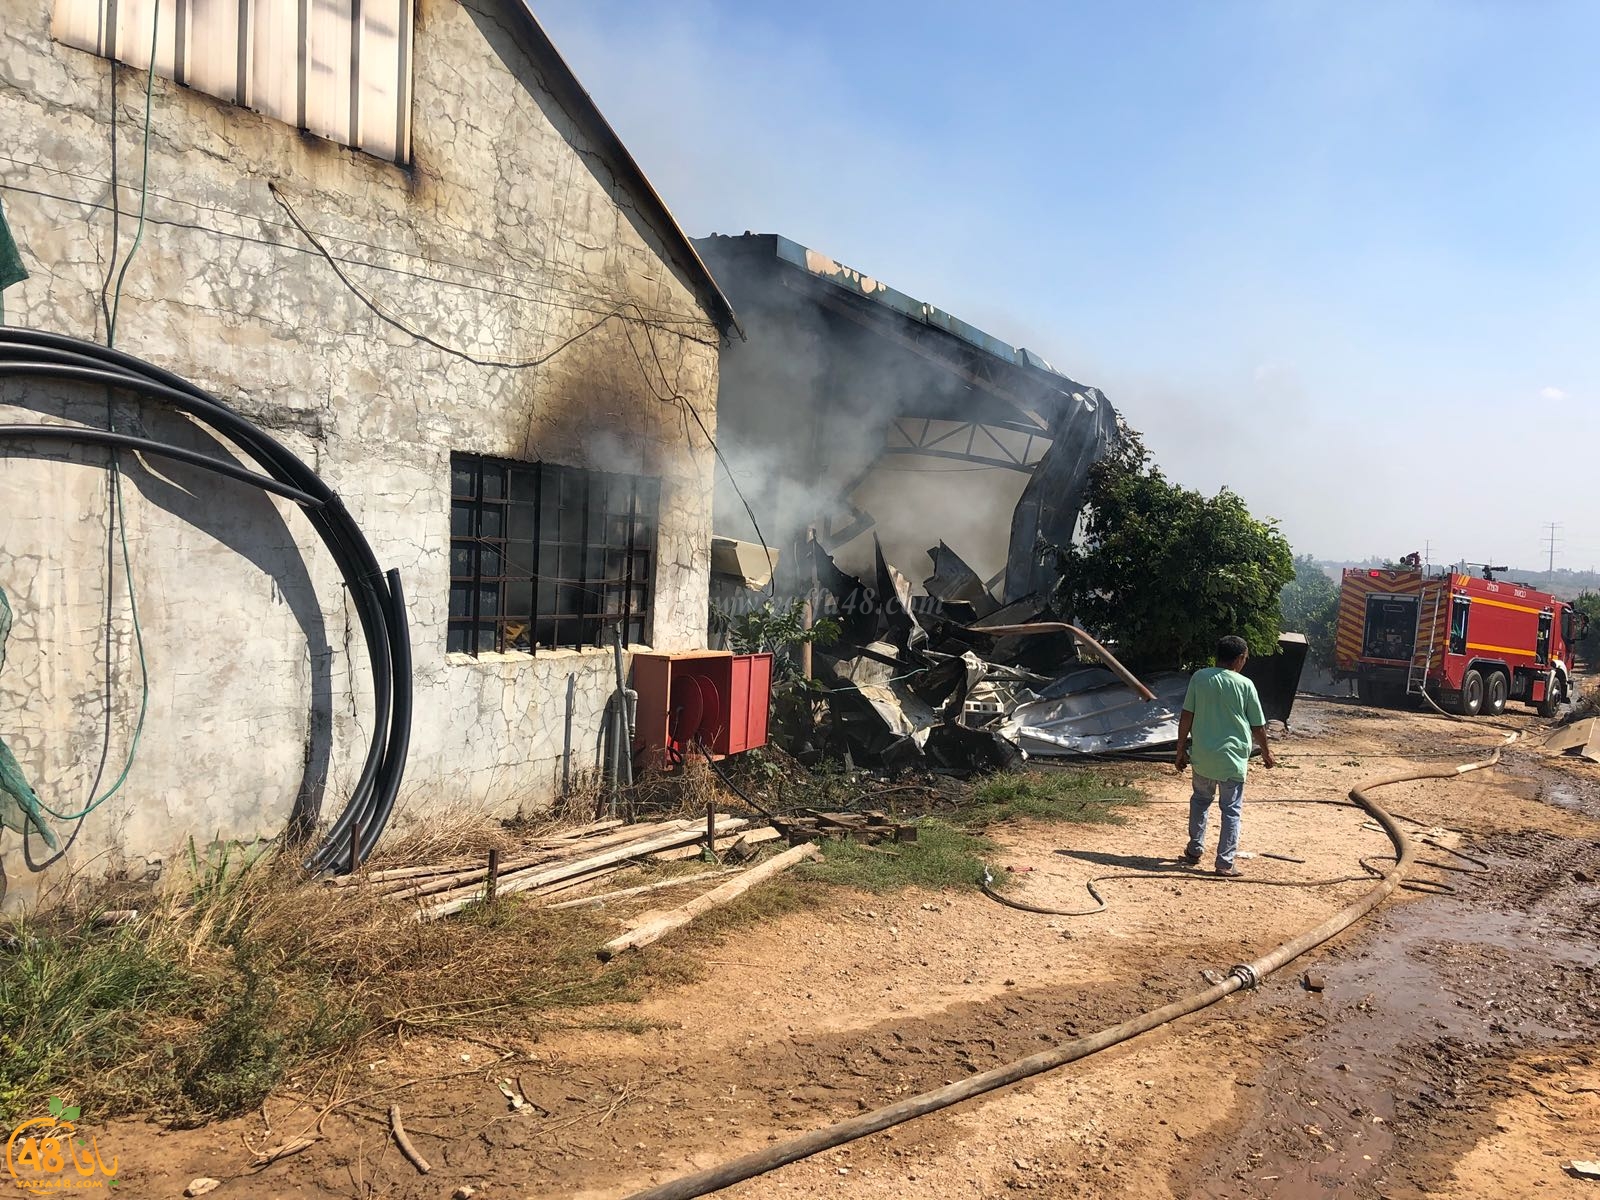  بالصور: حريق كبير داخل احد المصانع قرب الرملة